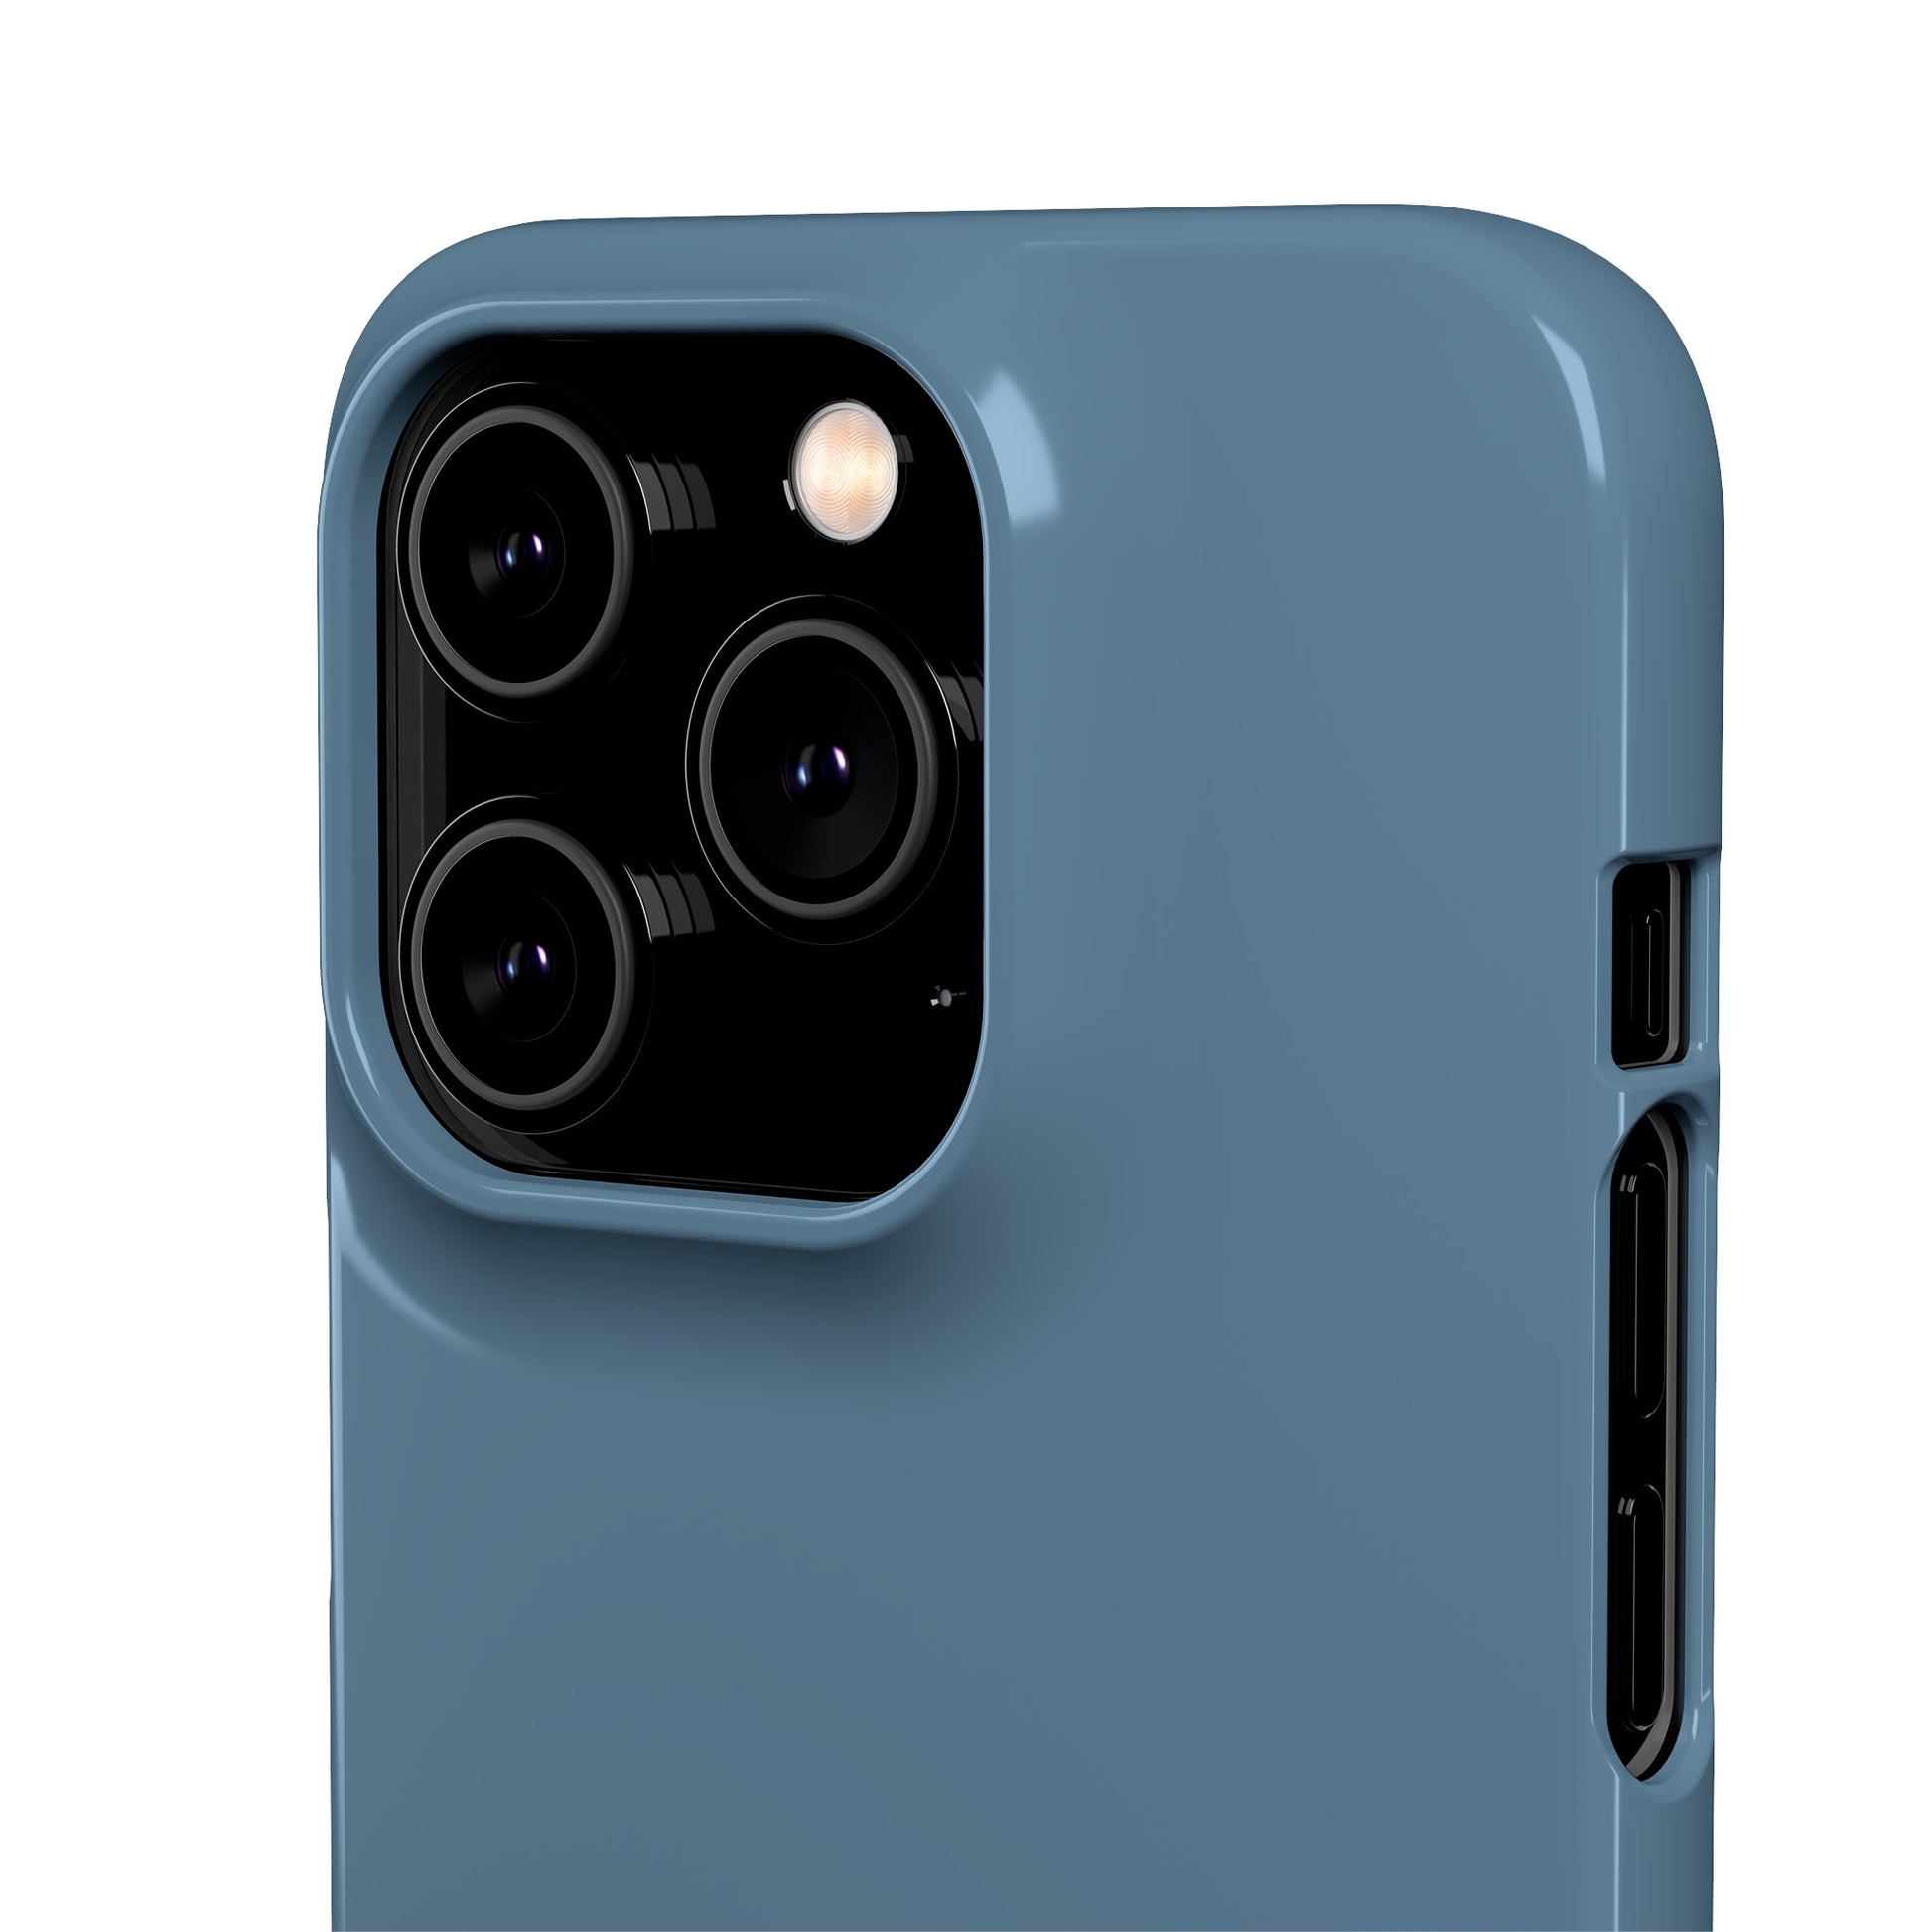 Blue Titanium iPhone 11 Pro Matte Phone Case Accessories Classic Glossy iPhone Cases Matte Phone Cases Samsung Cases